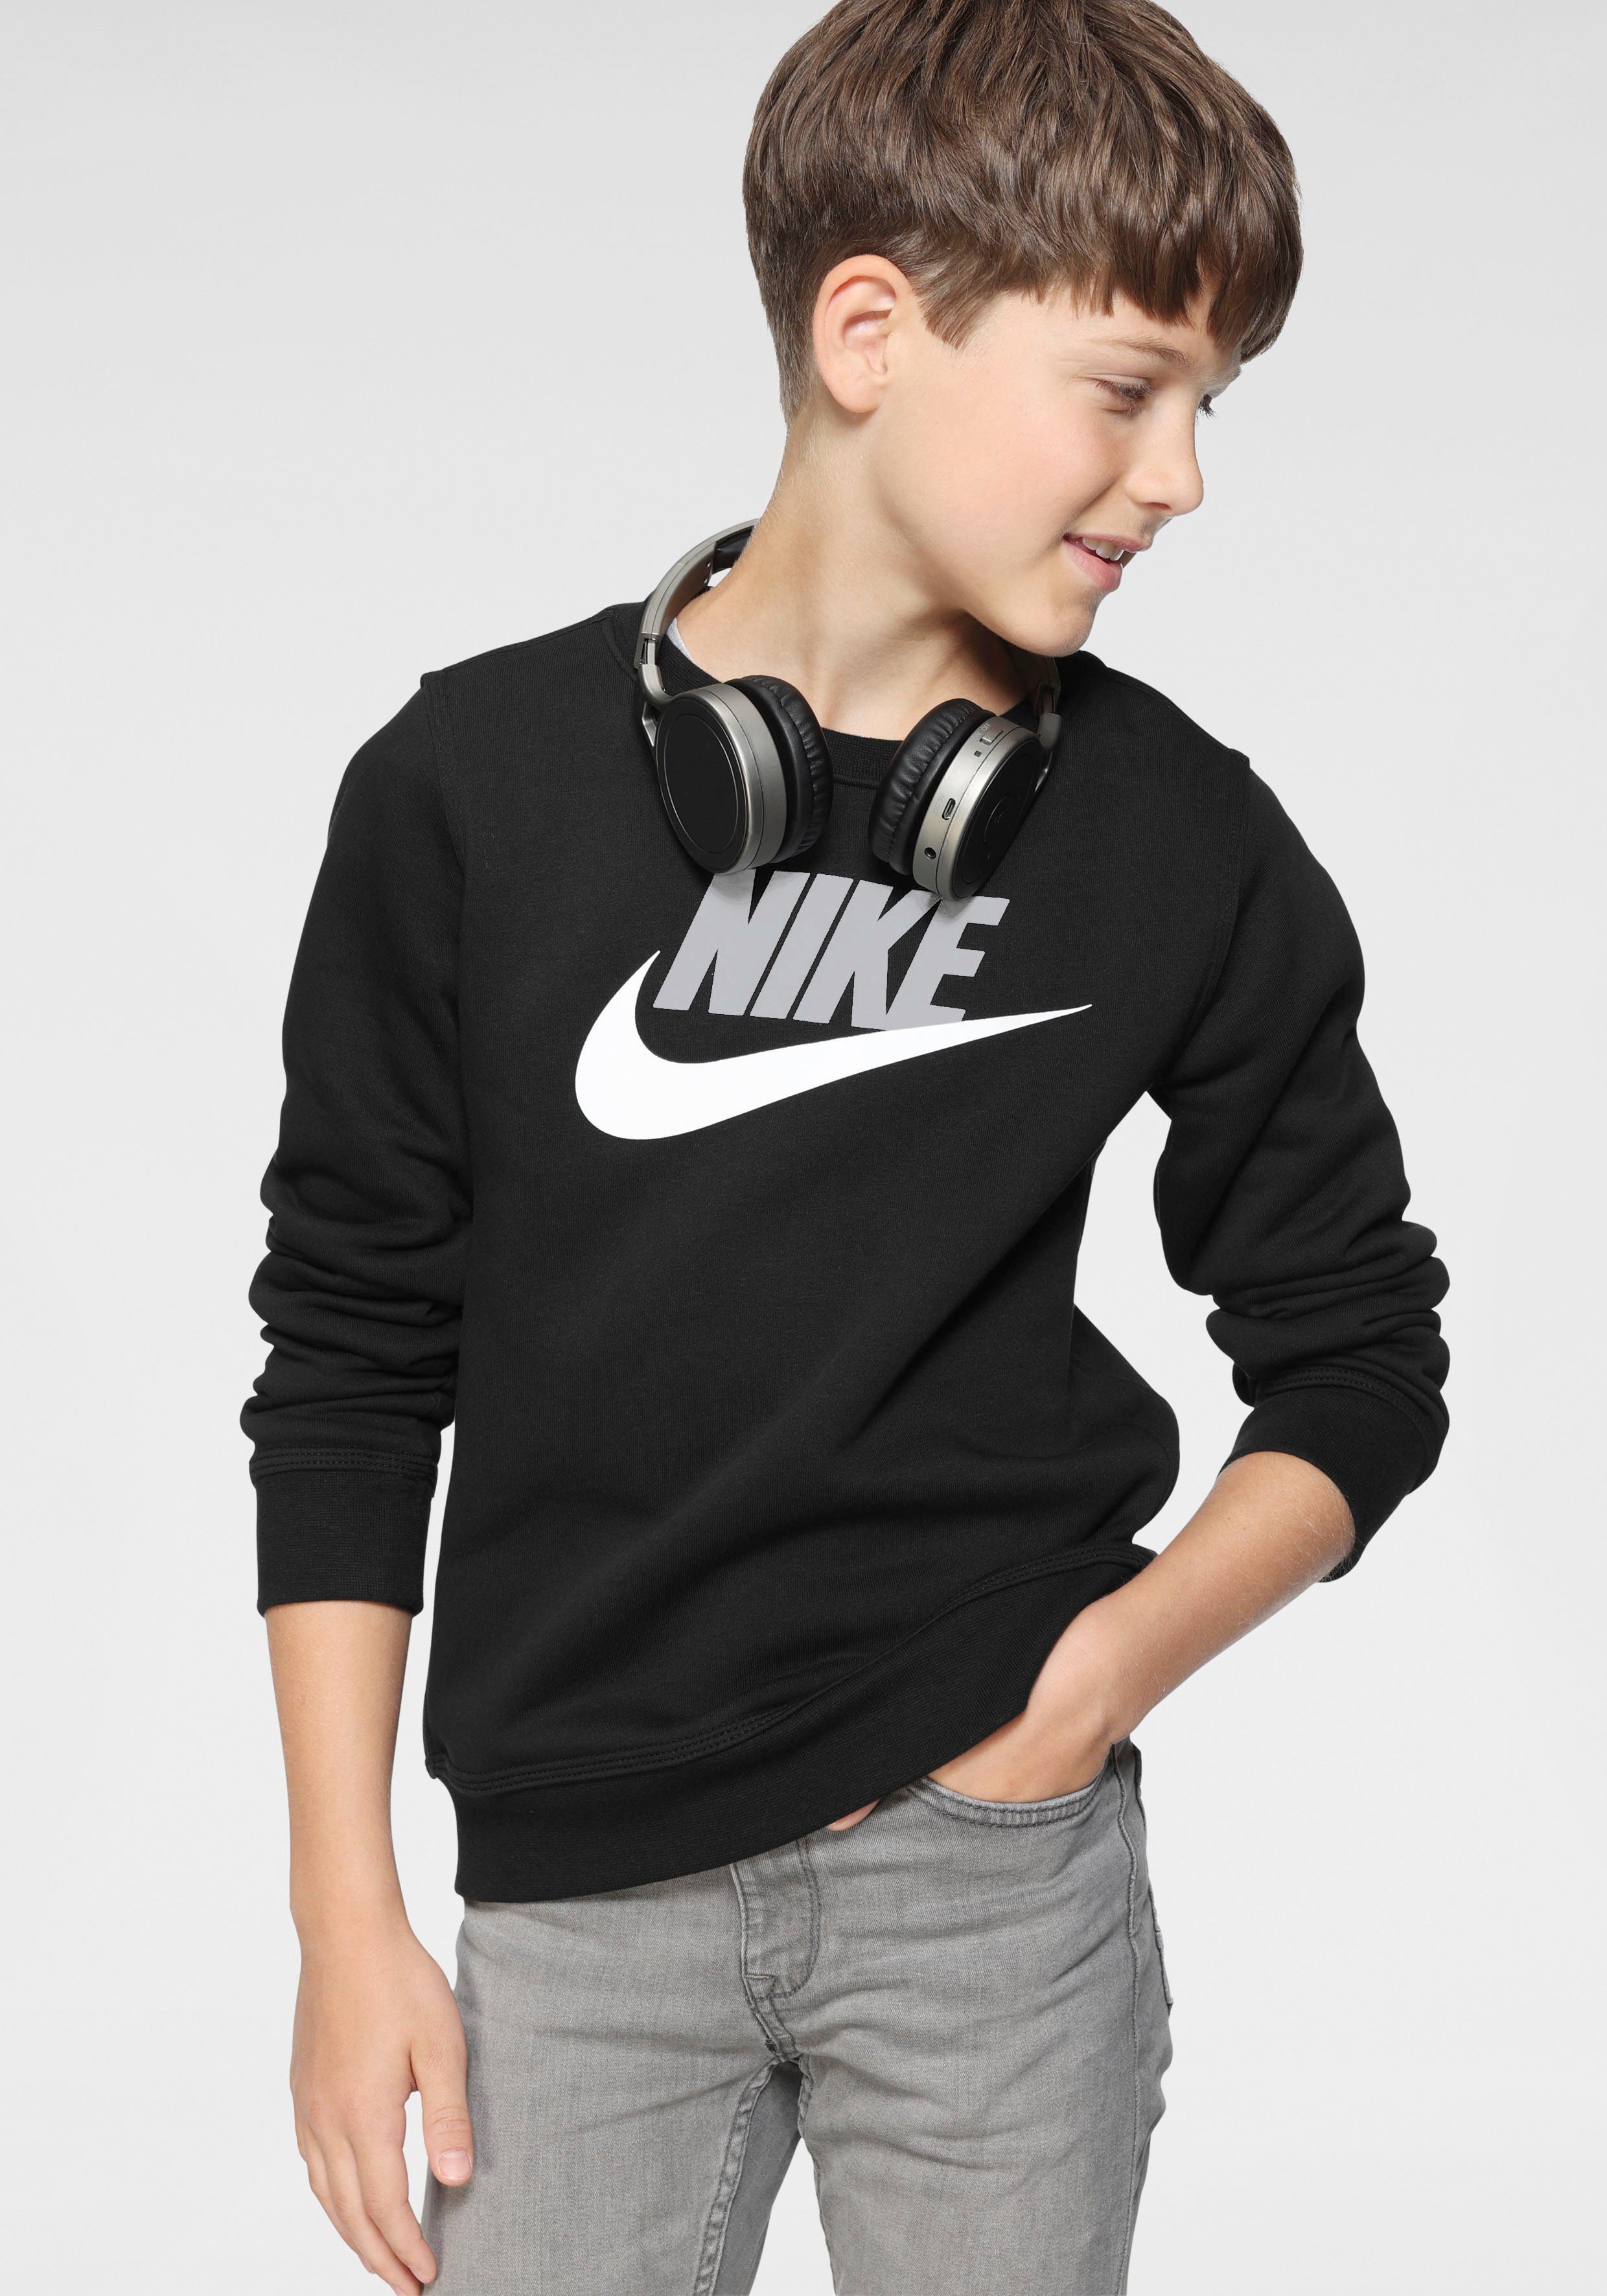 Nike Jungen Mode online kaufen | OTTO